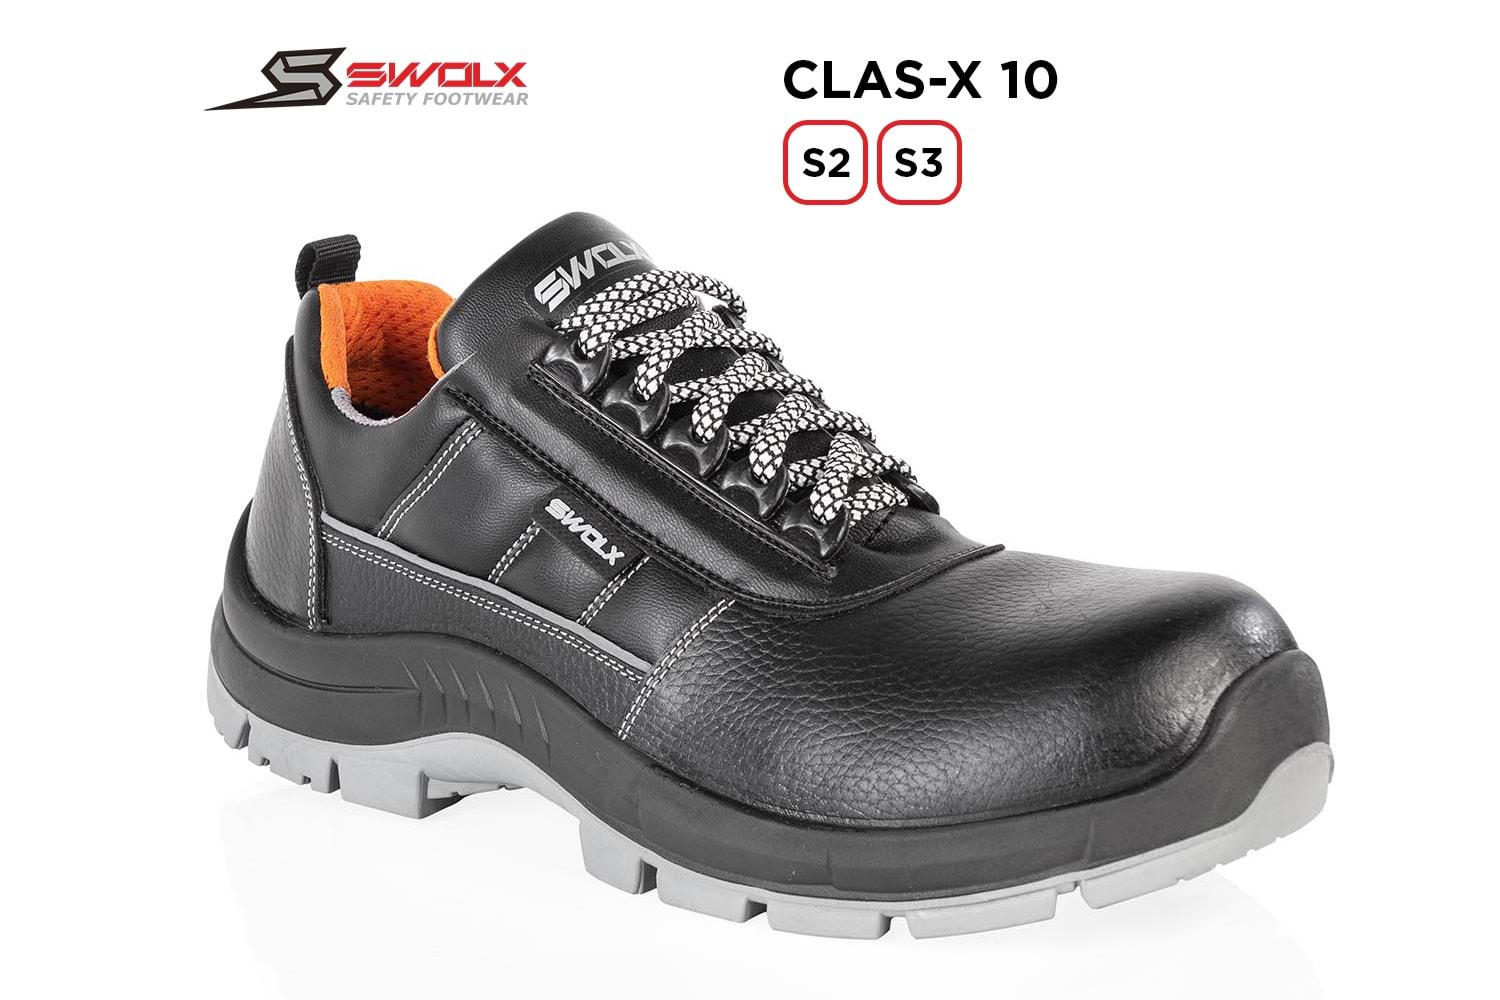 Swolx İş Ayakkabısı - Clas-X 10 S3 - 42